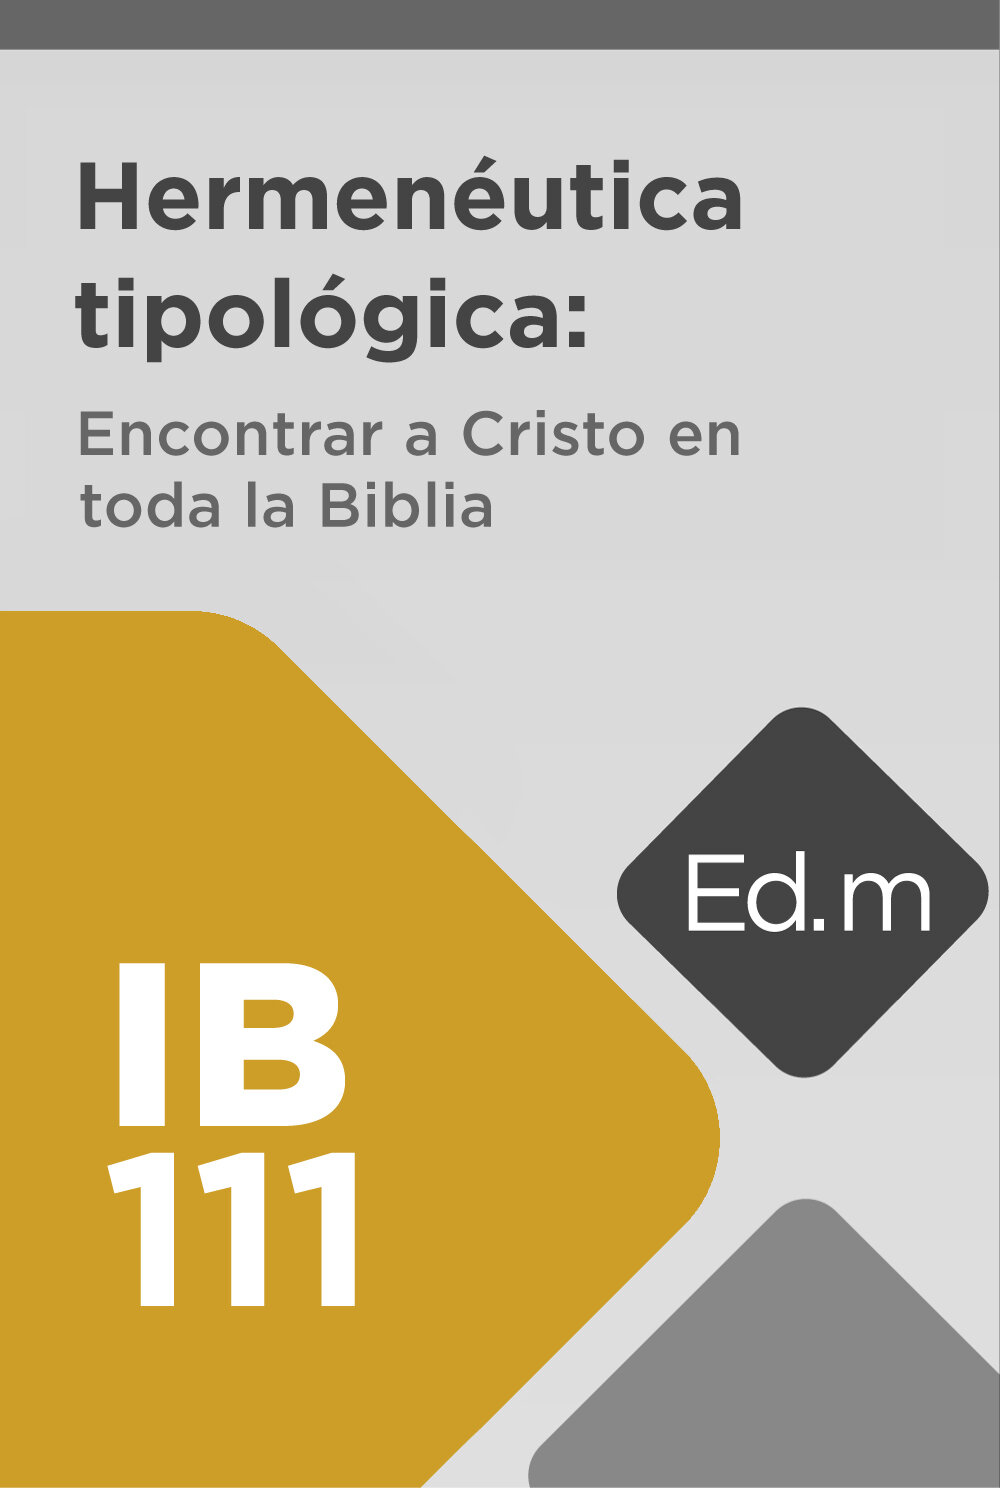 Ed. Móvil: IB111 Hermenéutica tipológica: Encontrar a Cristo en toda la Biblia